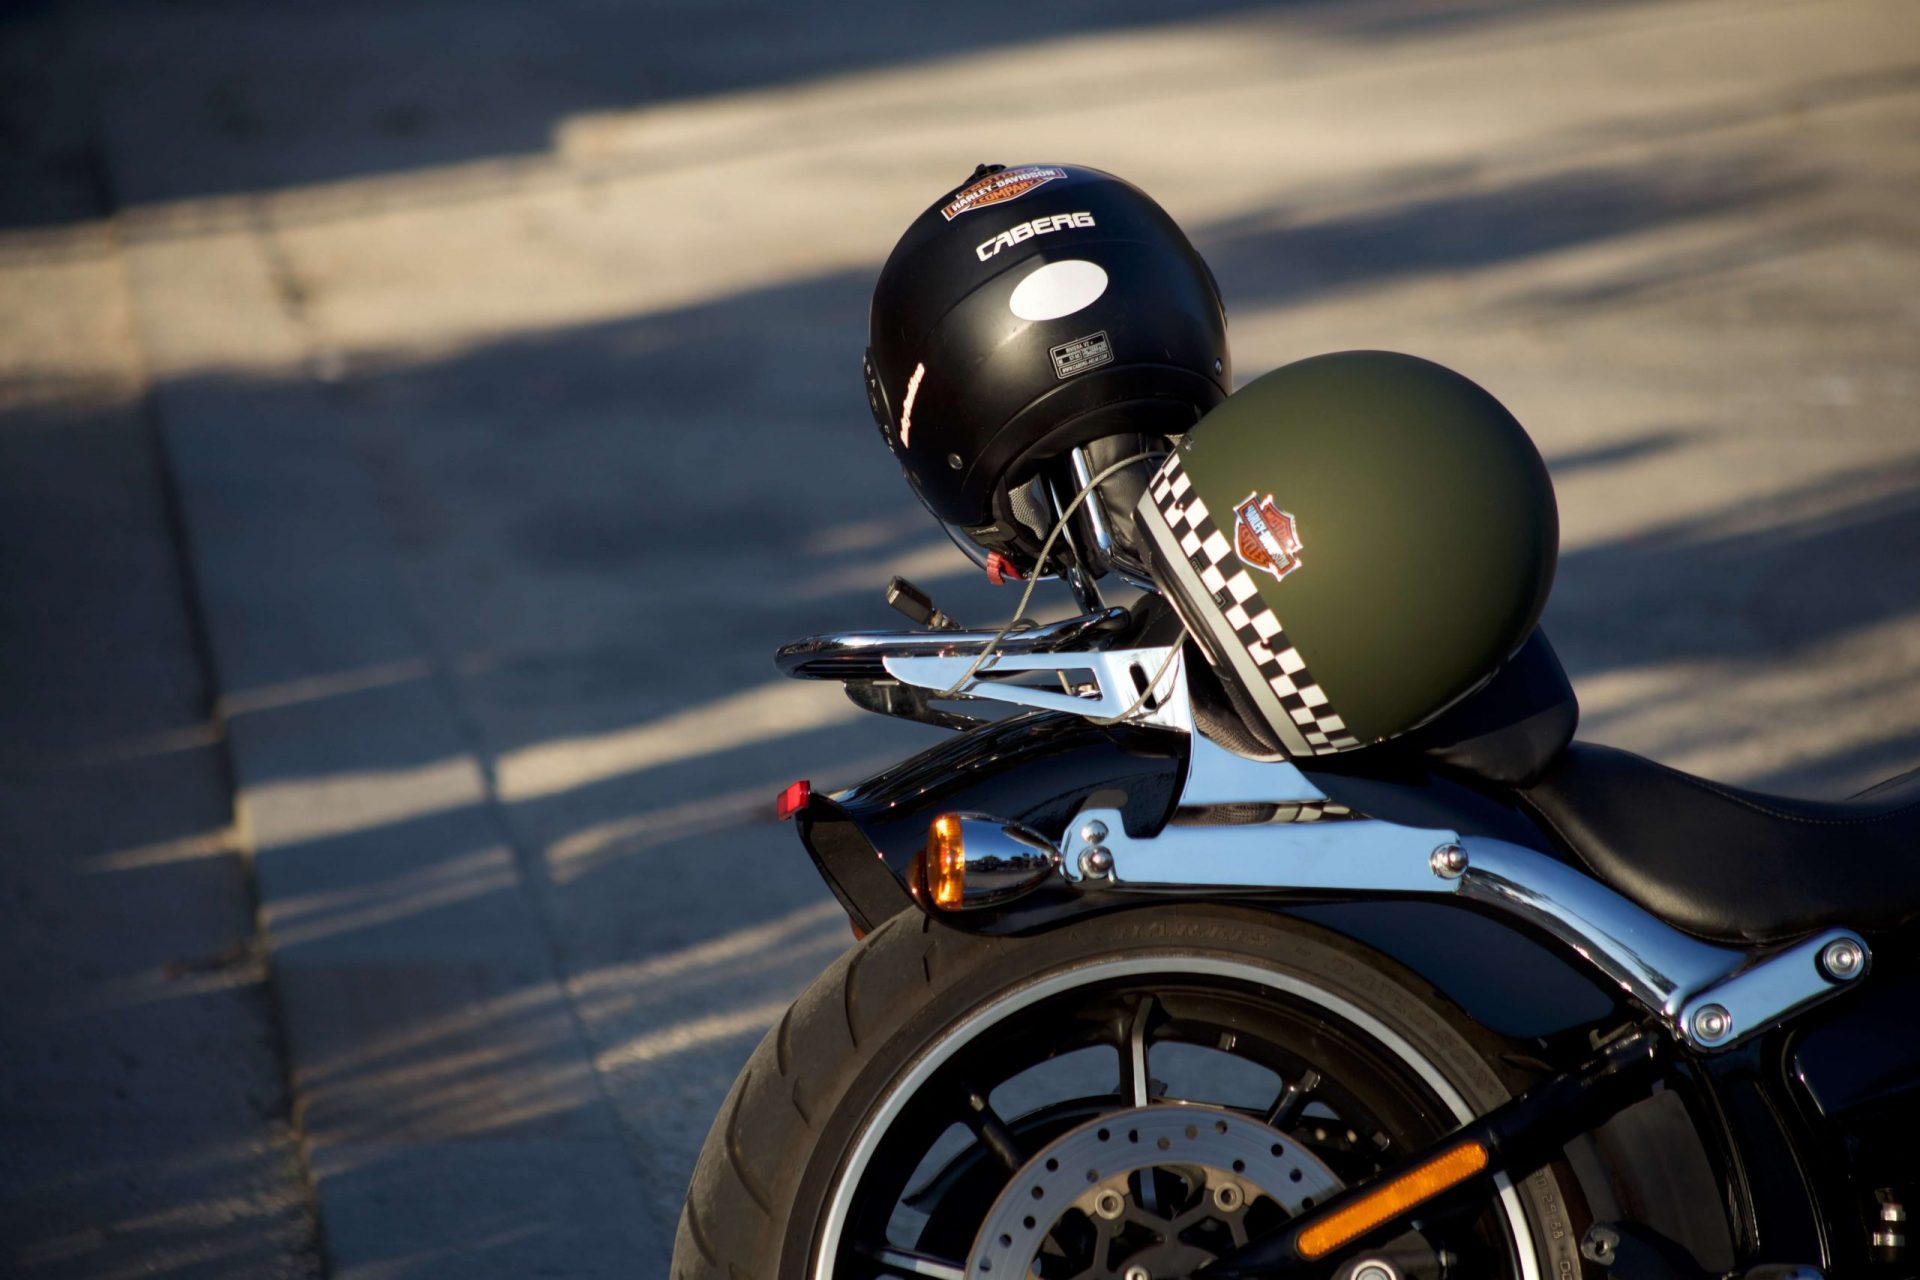 Autocollant casque moto : tout savoir sur la réglementation 